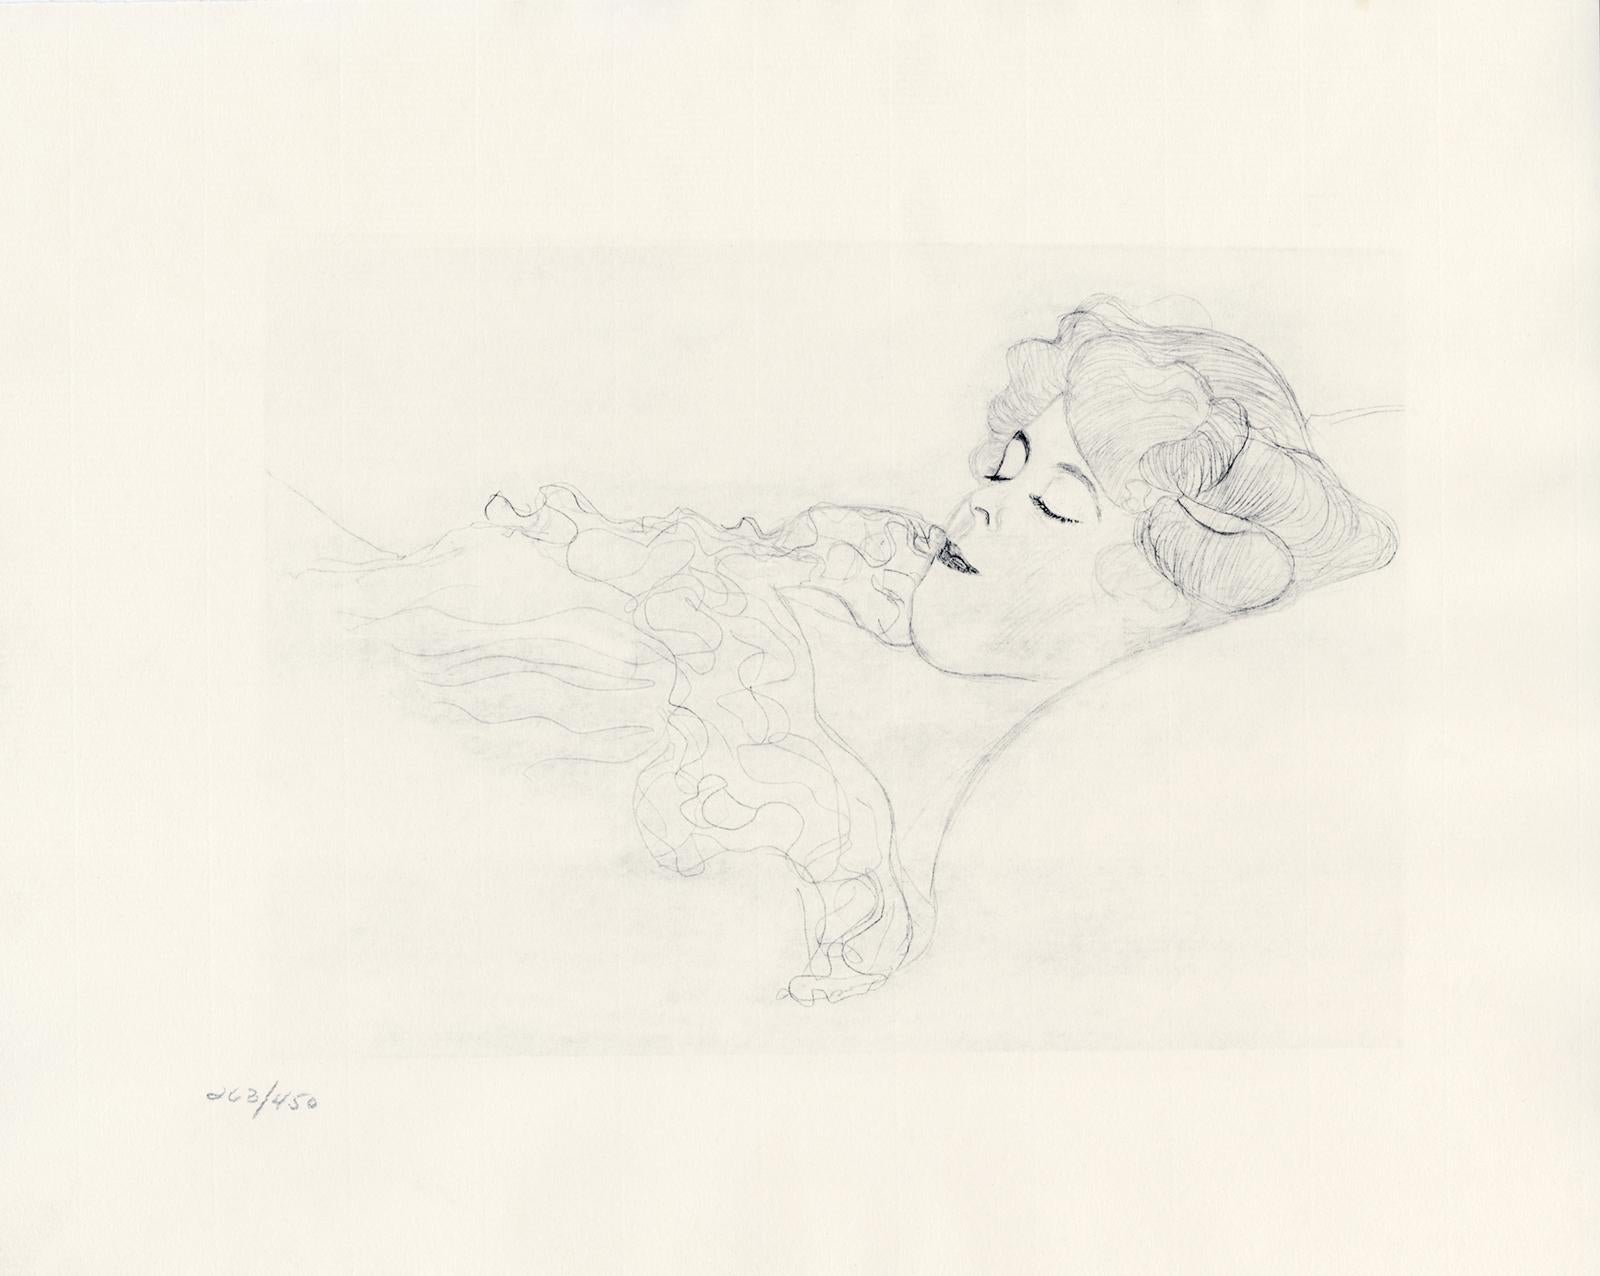 Planche n° 1 du portfolio "Dialogues des courtisanes" de Gustav Klimt de 1907, composé de 15 collotypes sur papier japon crème. Les dessins de ce folio seraient des études pour les célèbres tableaux de Klimt, les Serpents d'eau. 

Cette estampe